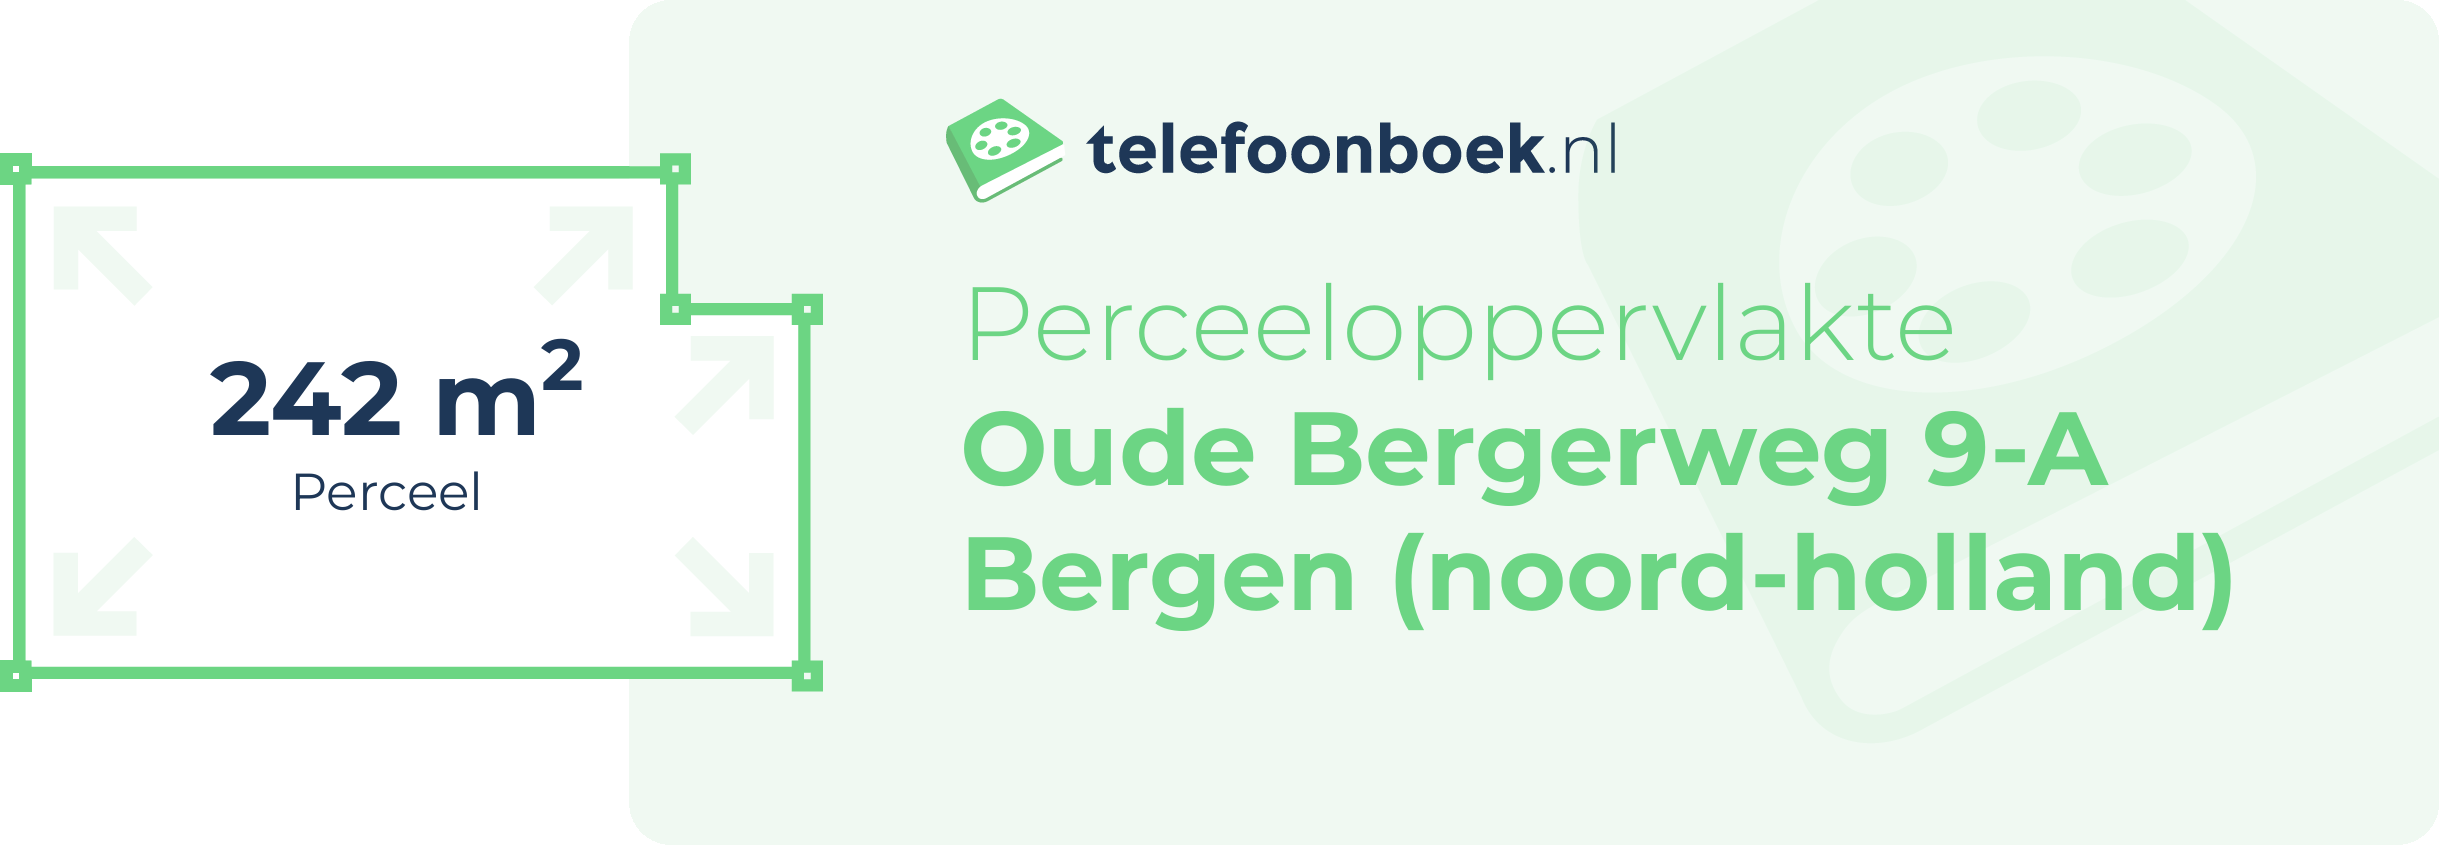 Perceeloppervlakte Oude Bergerweg 9-A Bergen (Noord-Holland)